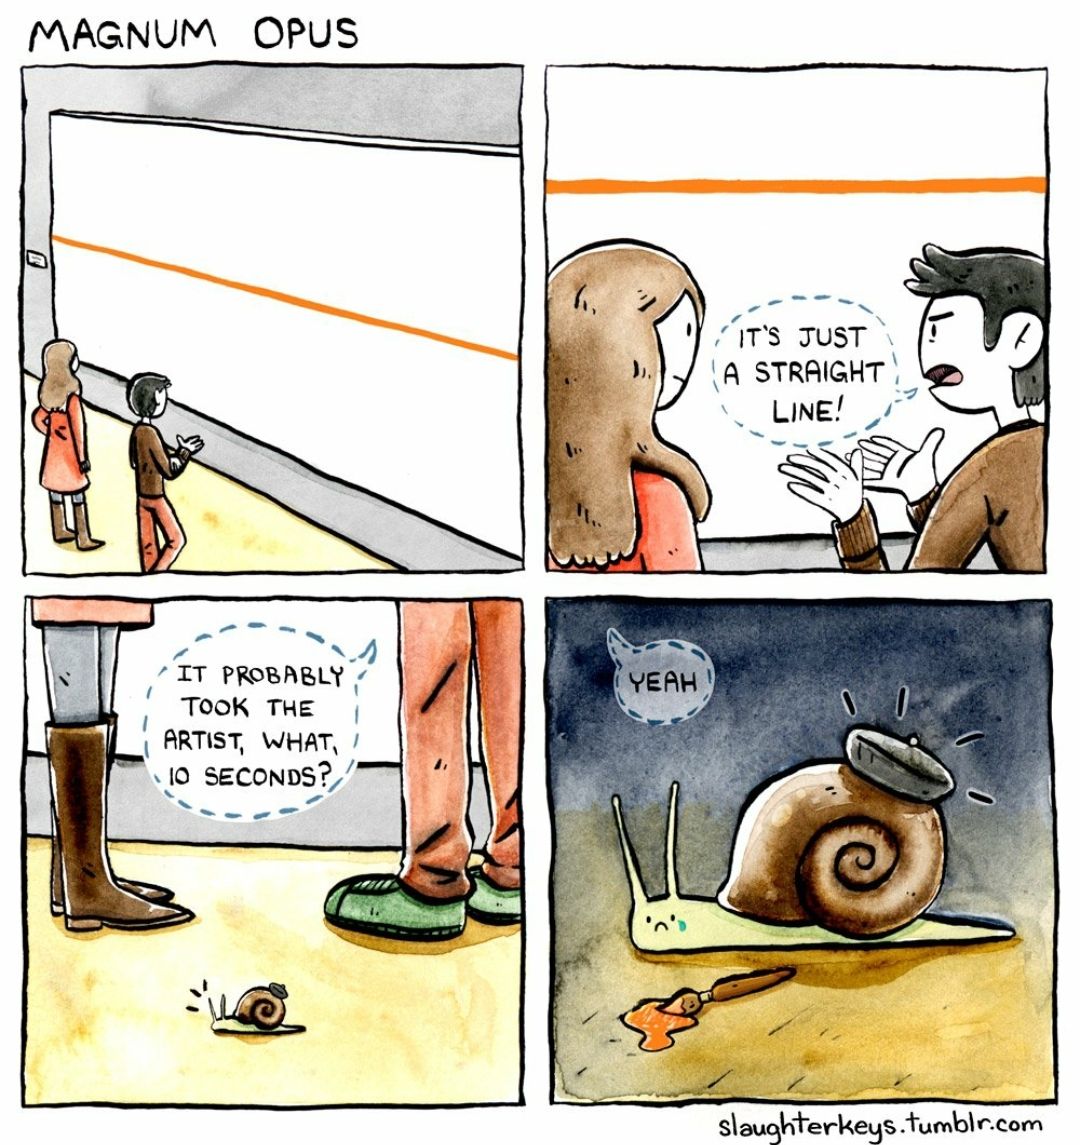 Poor snail :(